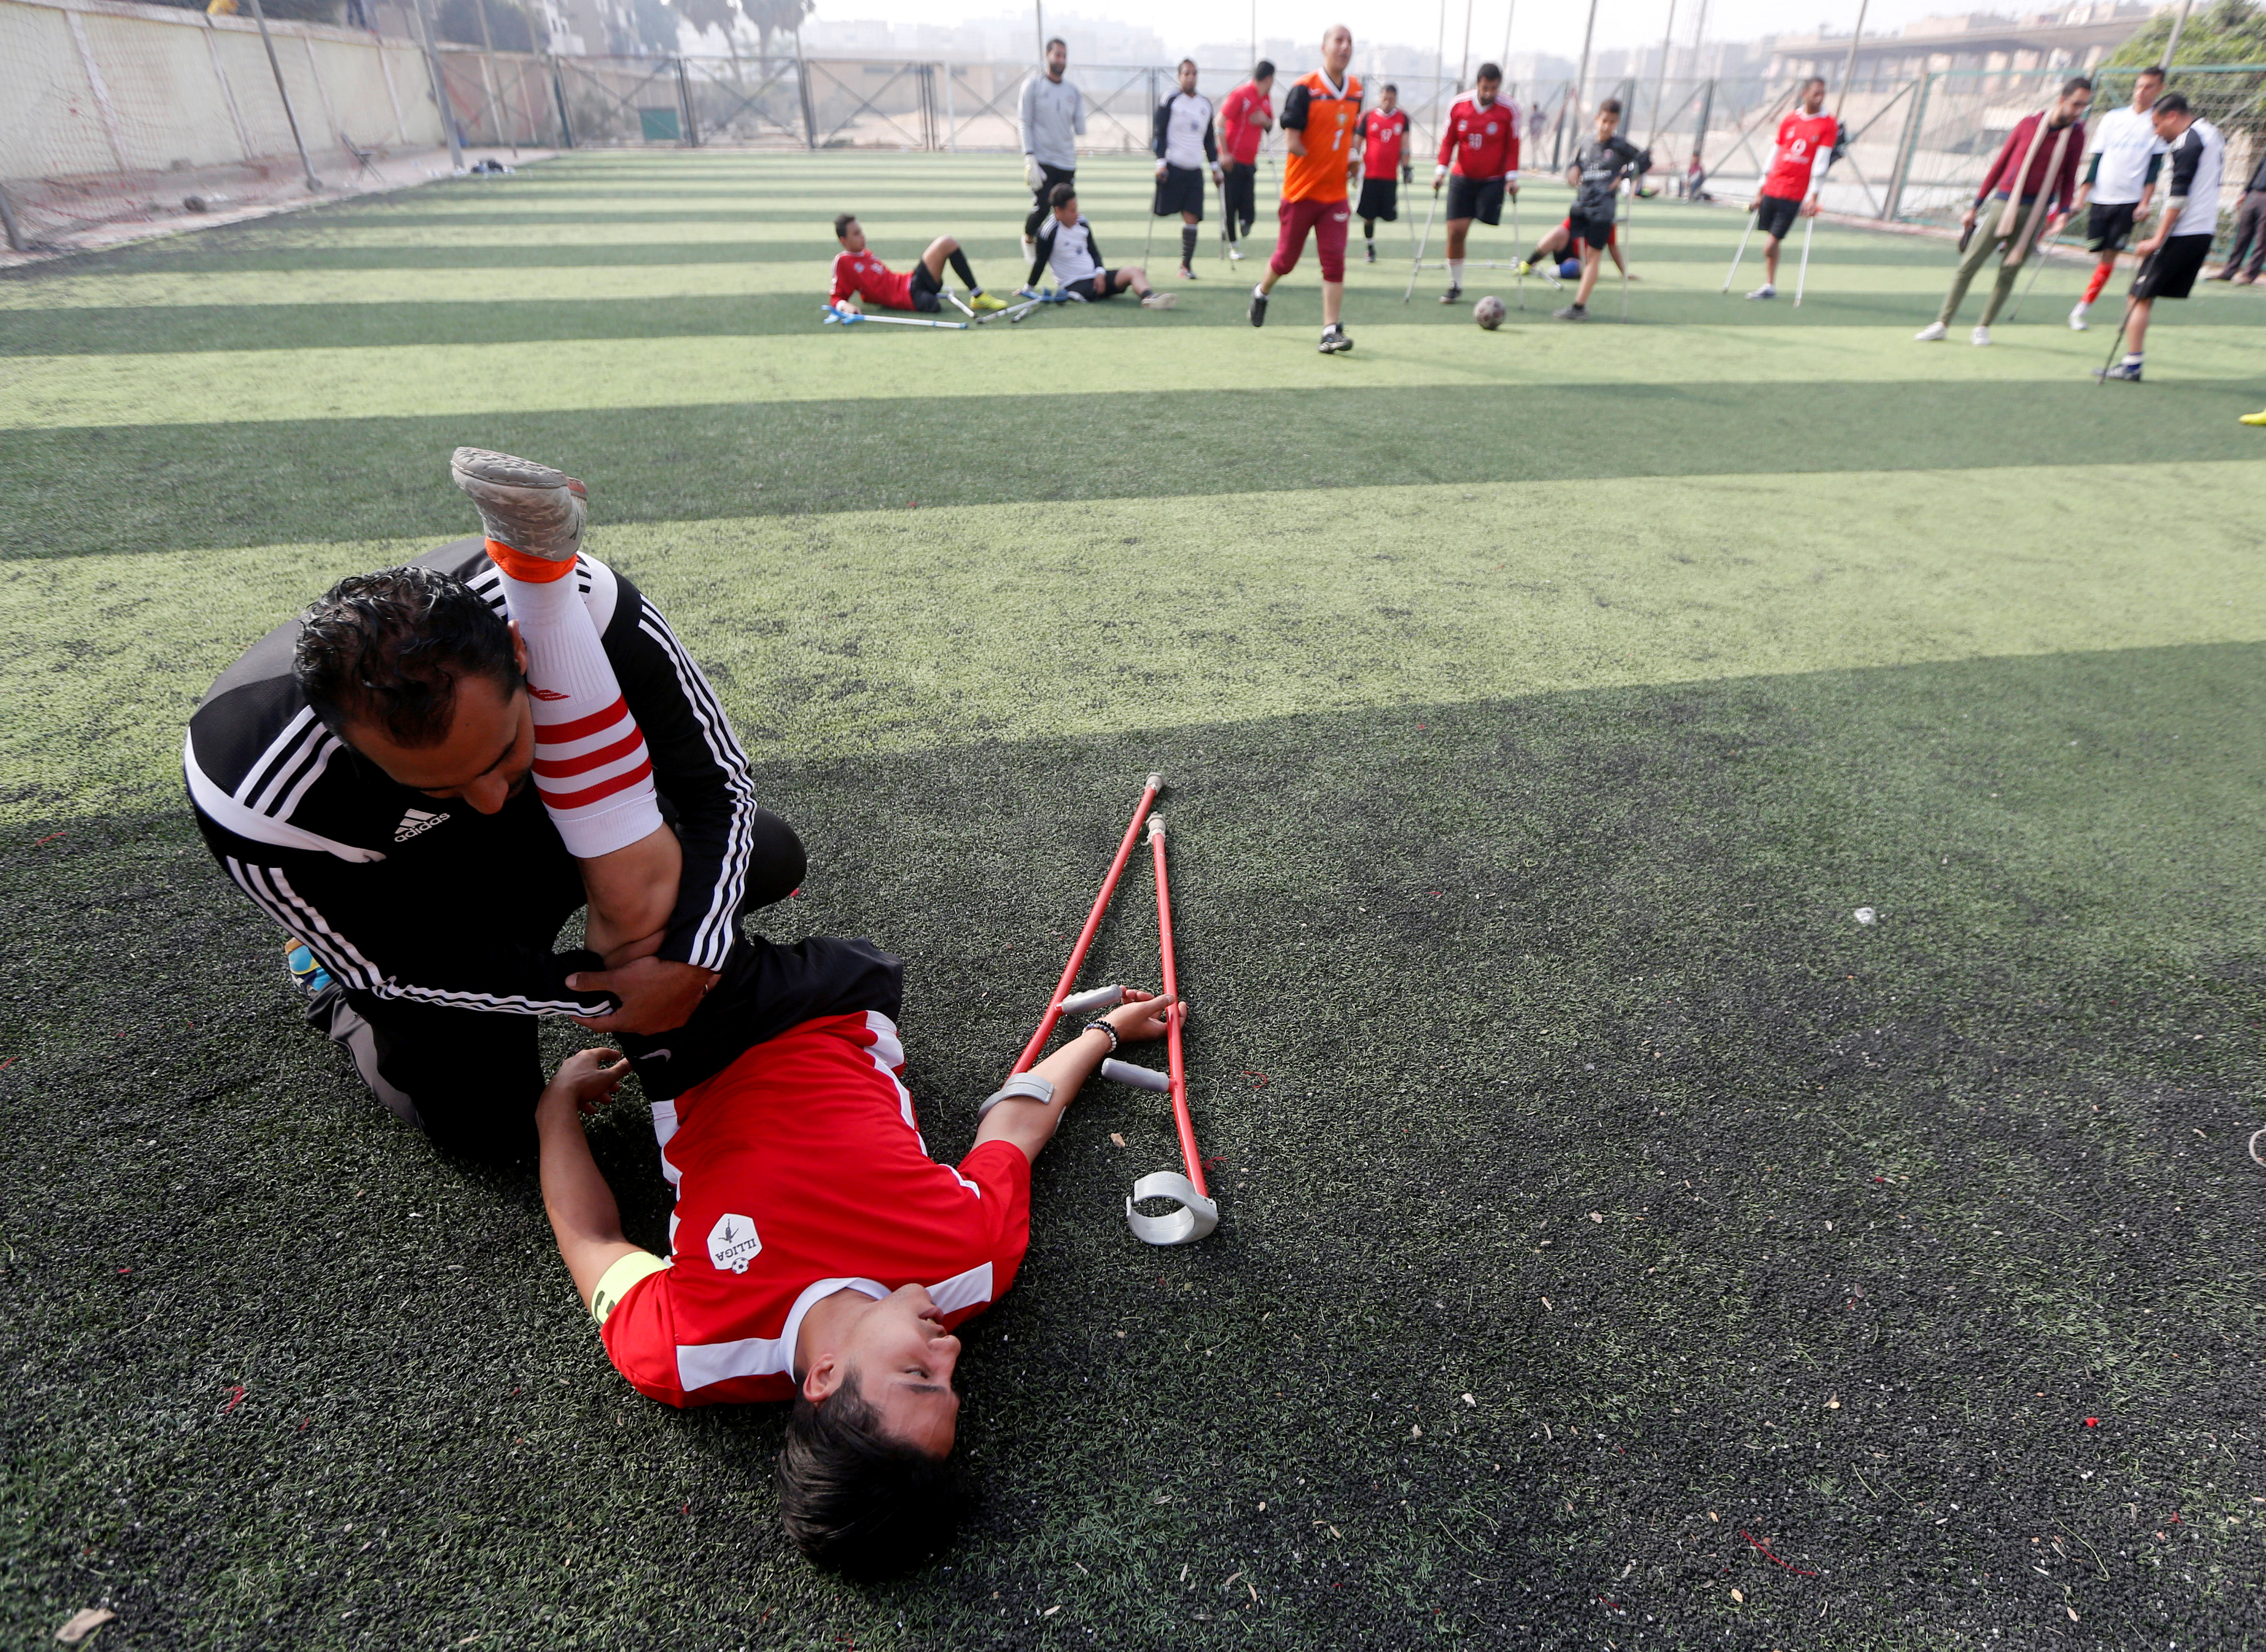 المدرب يسرى محمود يساعد احد اللاعبين